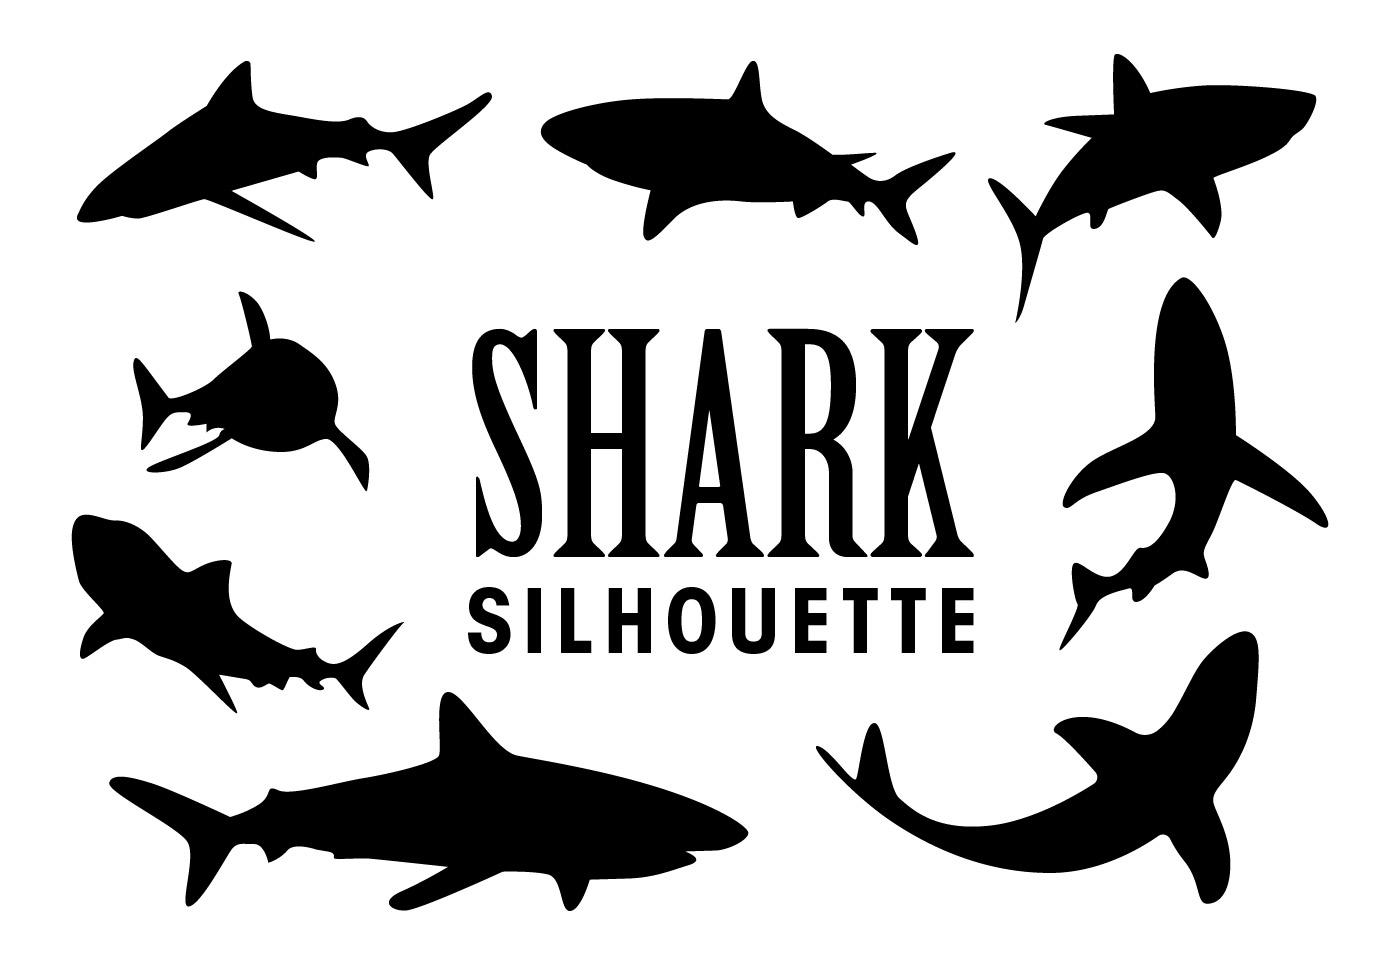 Download Vector Shark Silhouettes 137248 Vector Art at Vecteezy